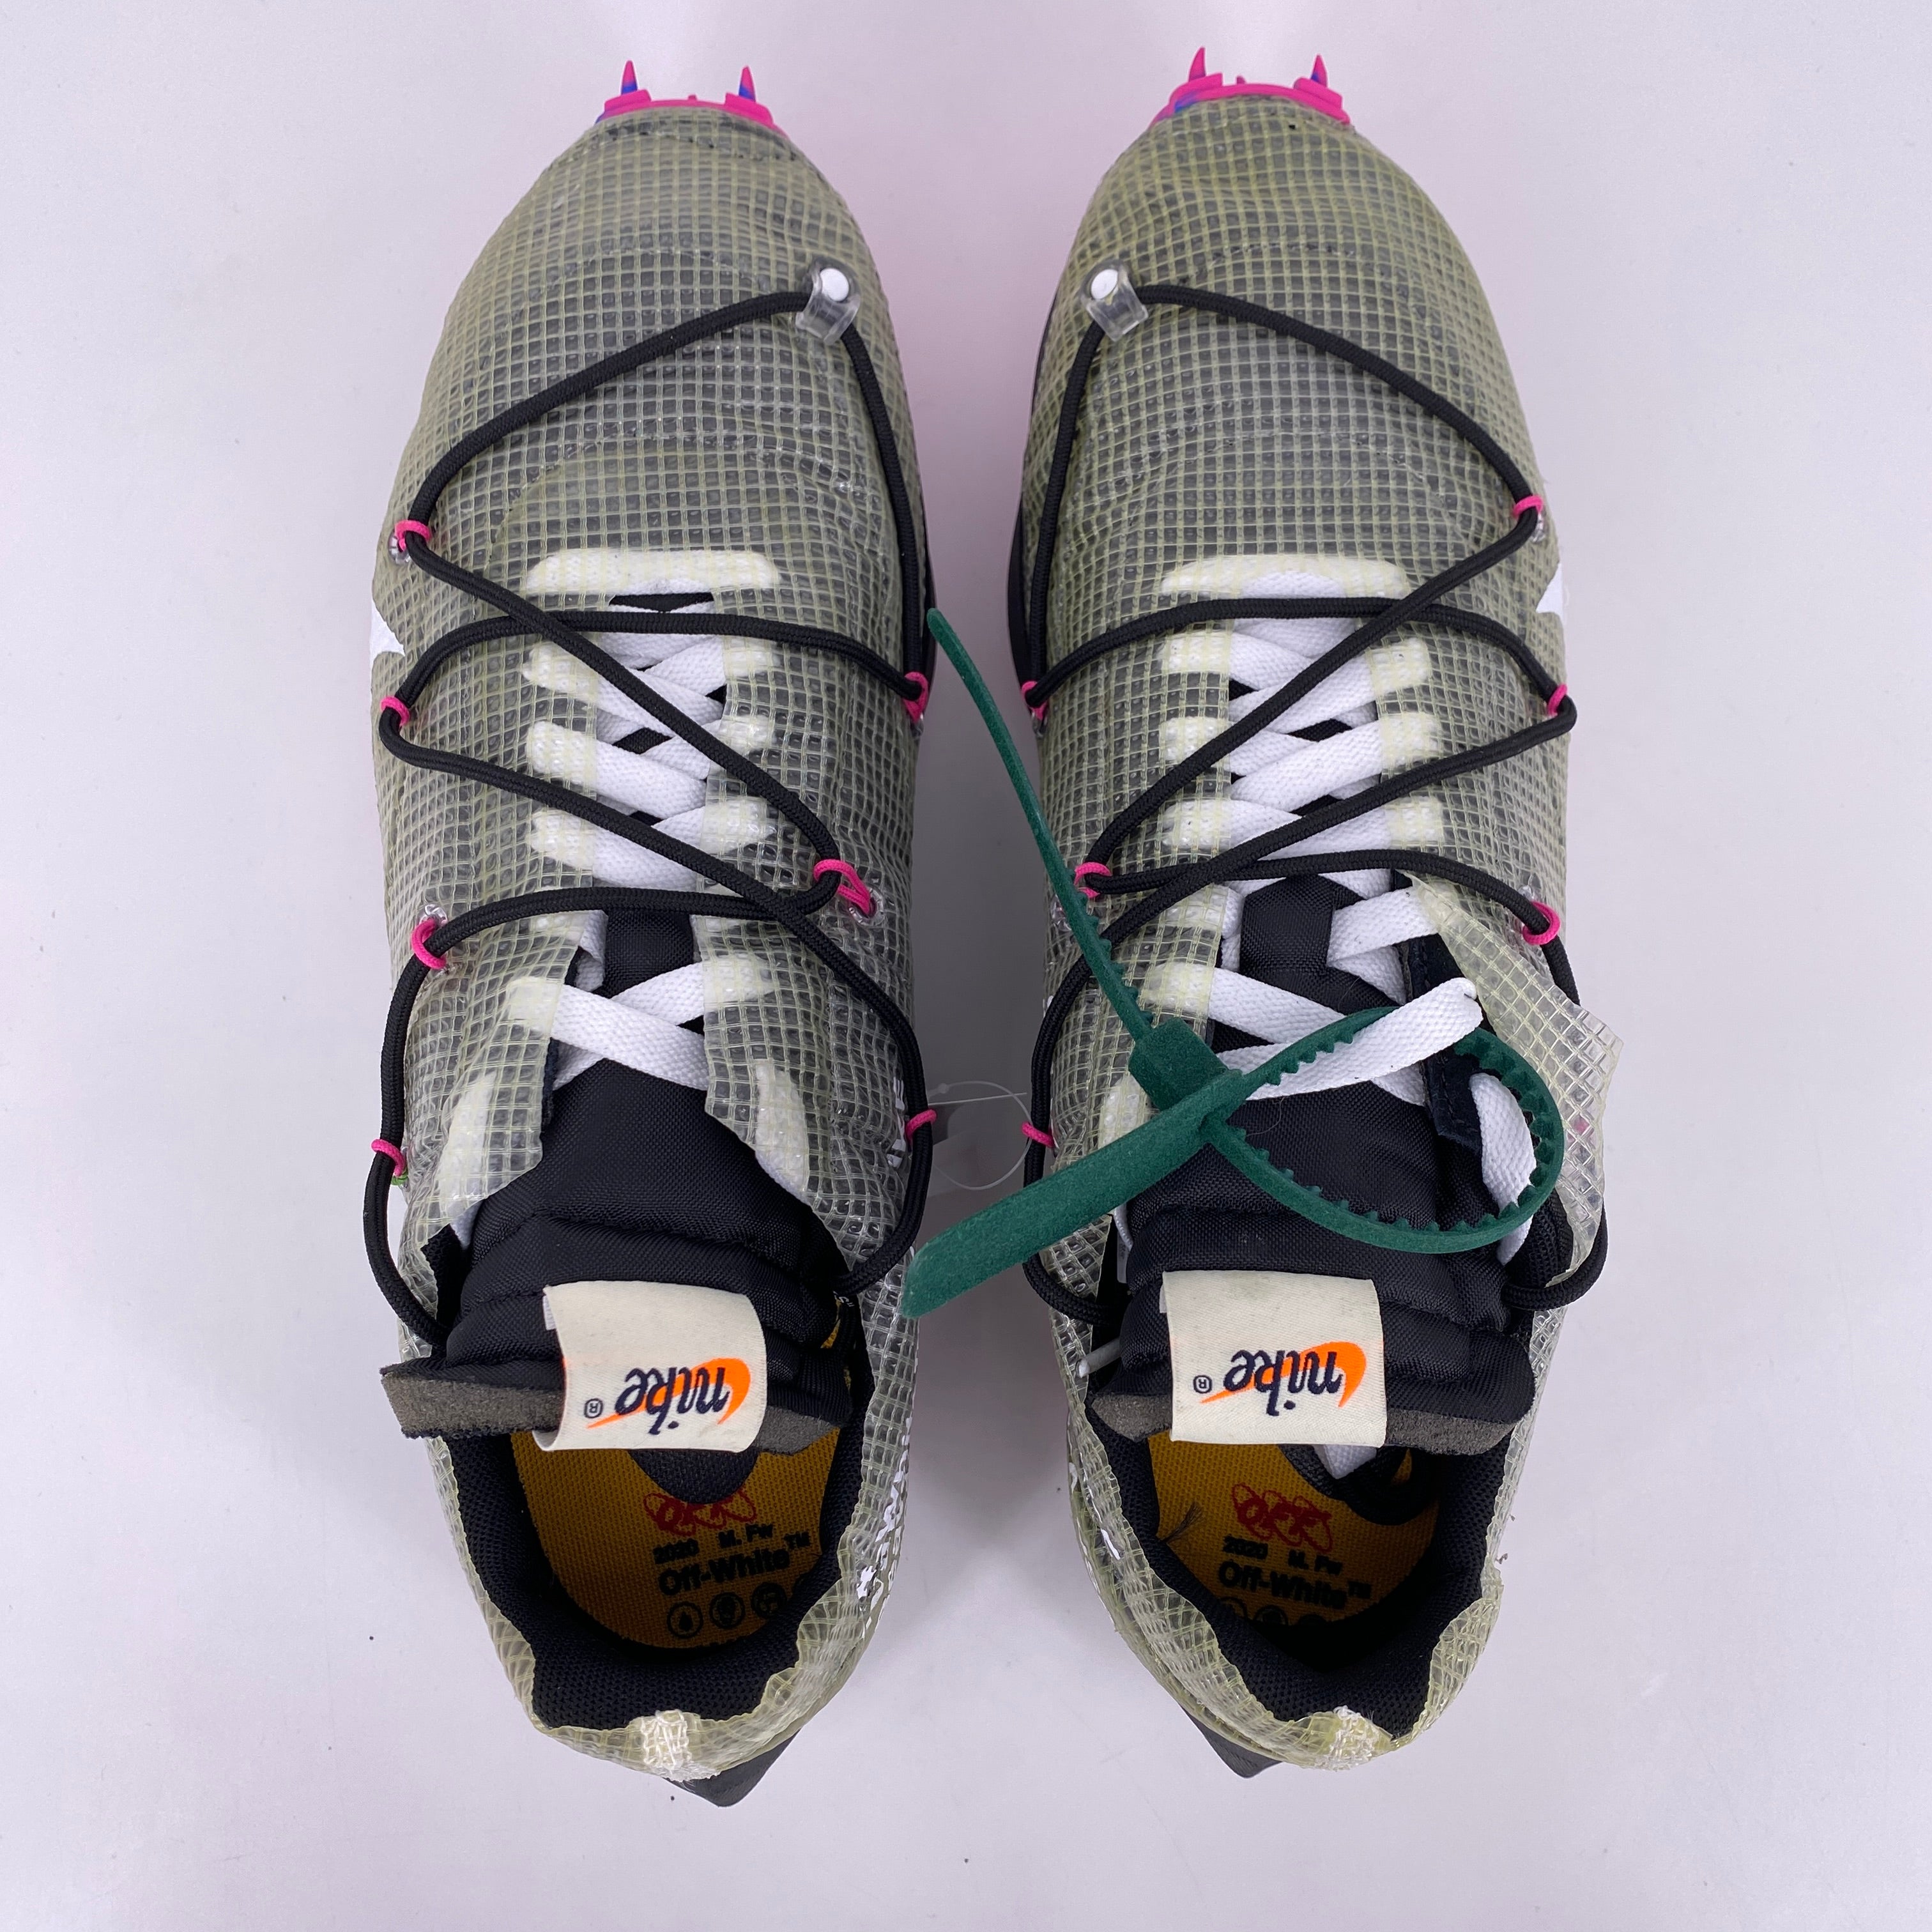 Nike (W) Vapor Street / OW &quot;Fuchsia&quot; 2019 New Size 12.5W